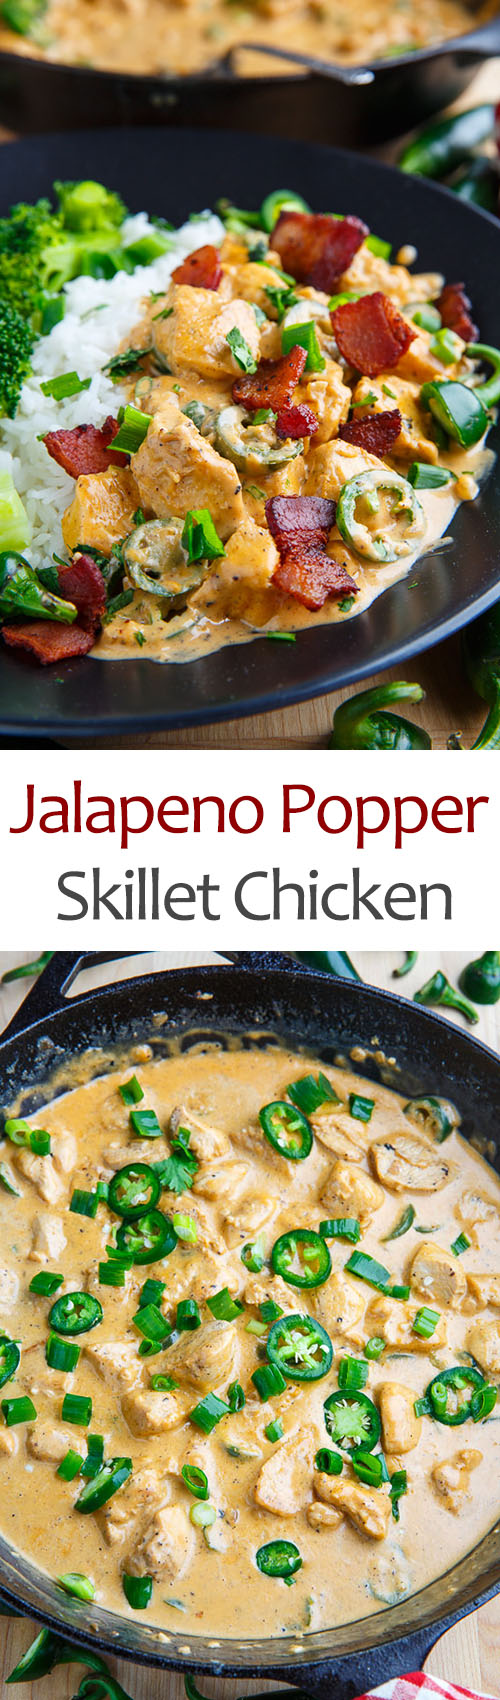 Jalapeno Popper Skillet Chicken